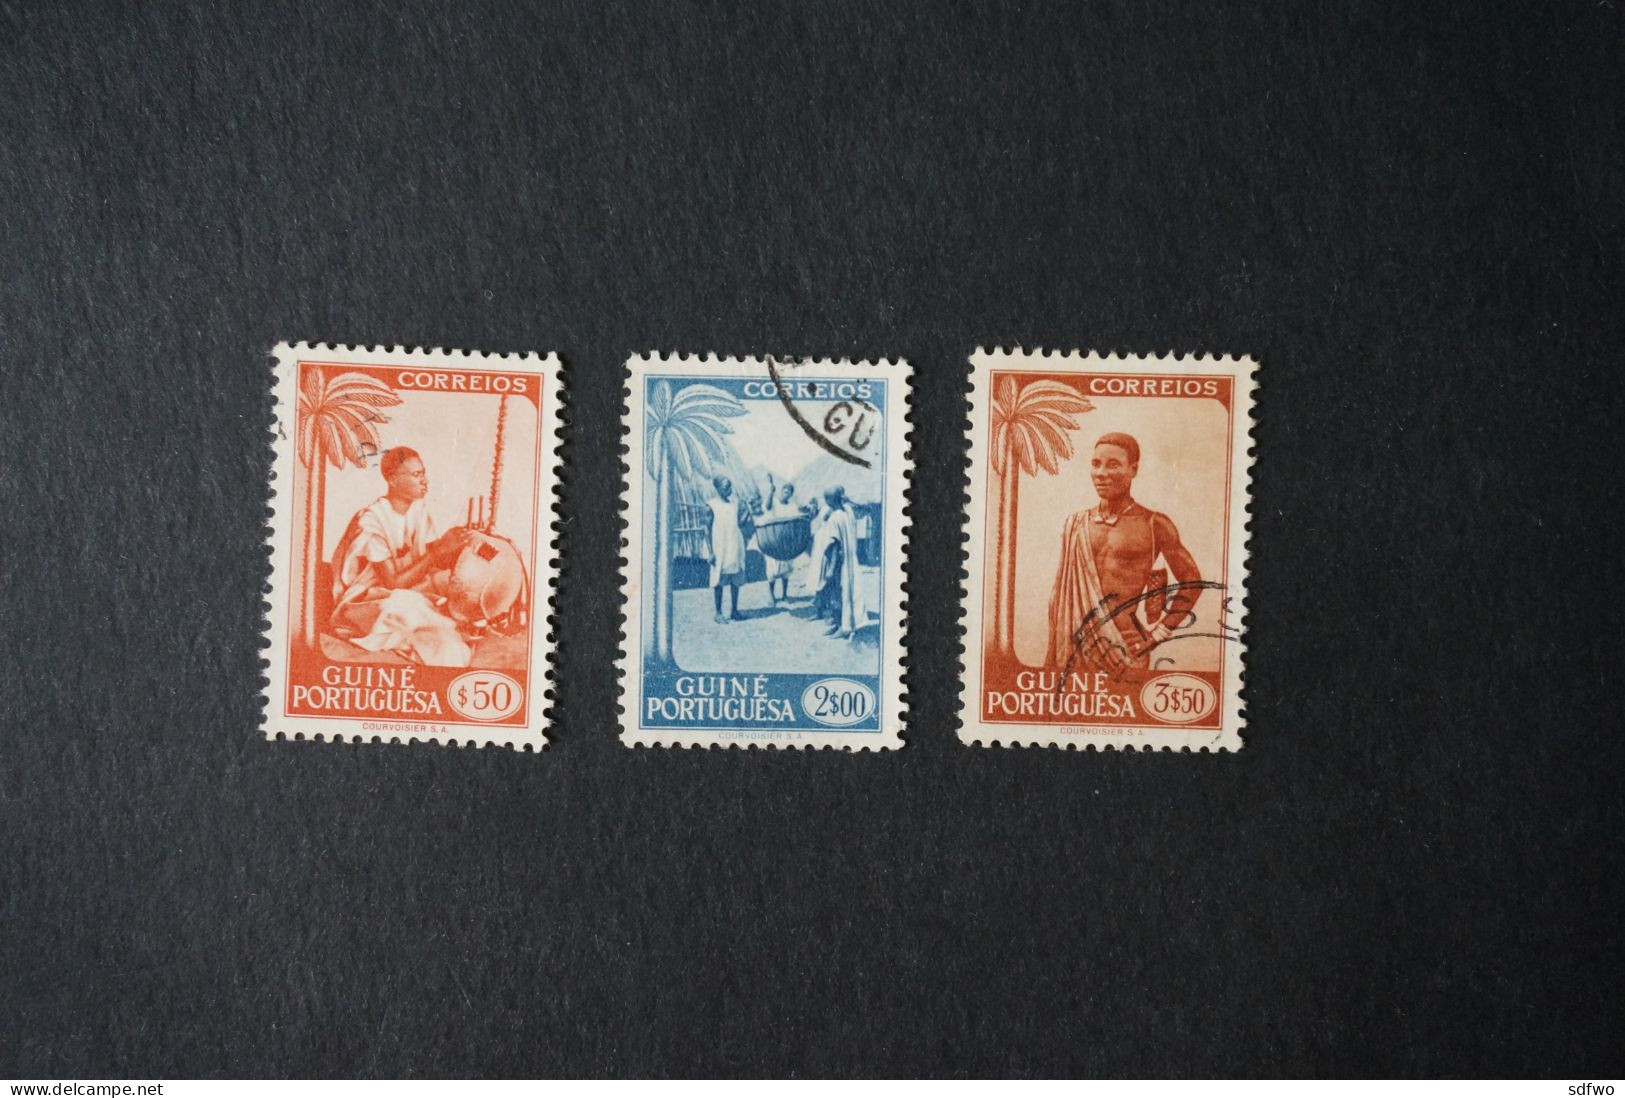 (T1) Portuguese Guiné - 1948 Motifs & Portraits $50, 2$00, 3$50 - Used - Portuguese Guinea